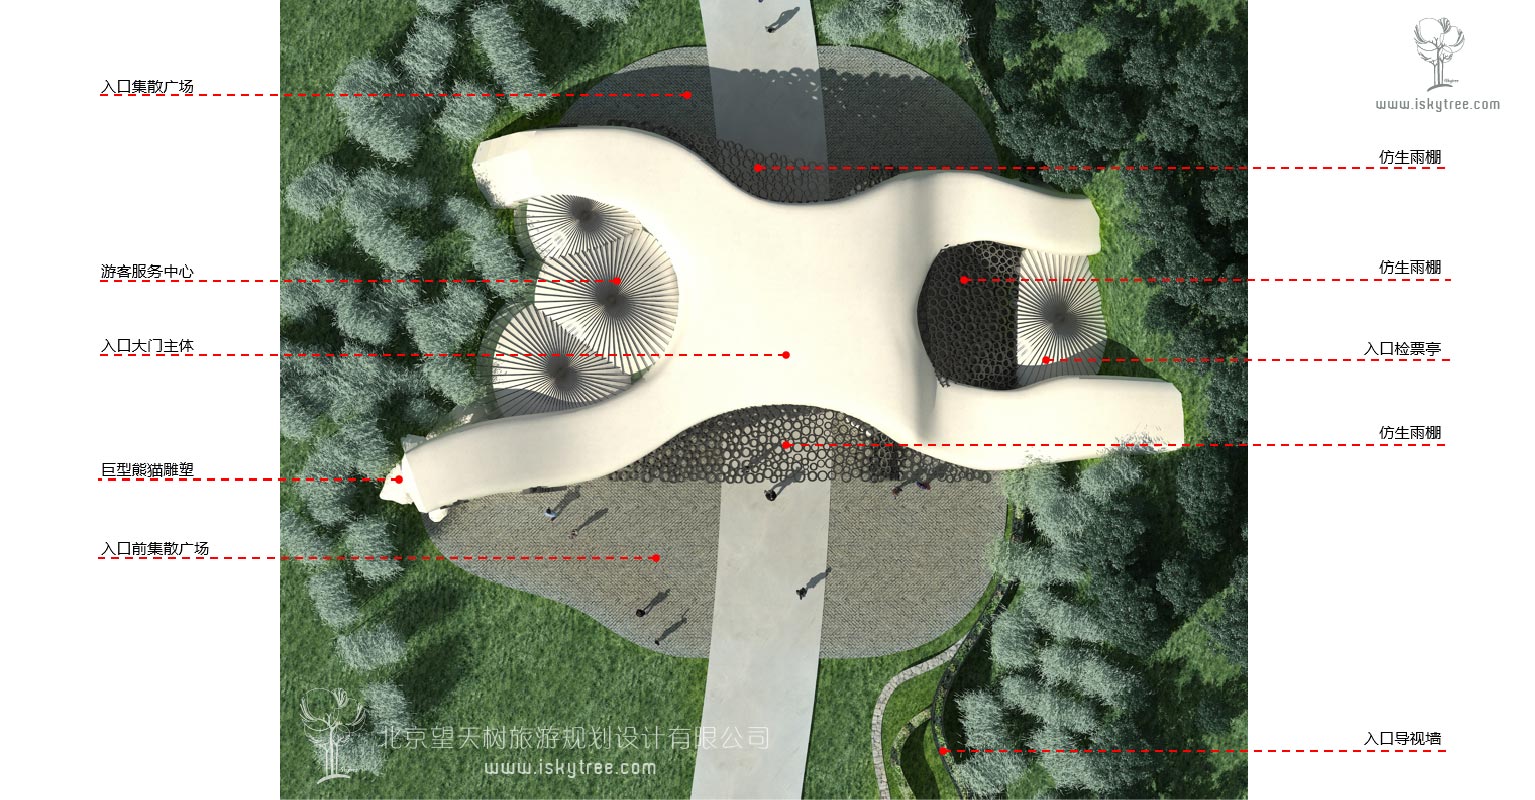 熊貓谷次入口景區大門節點設計總平面圖